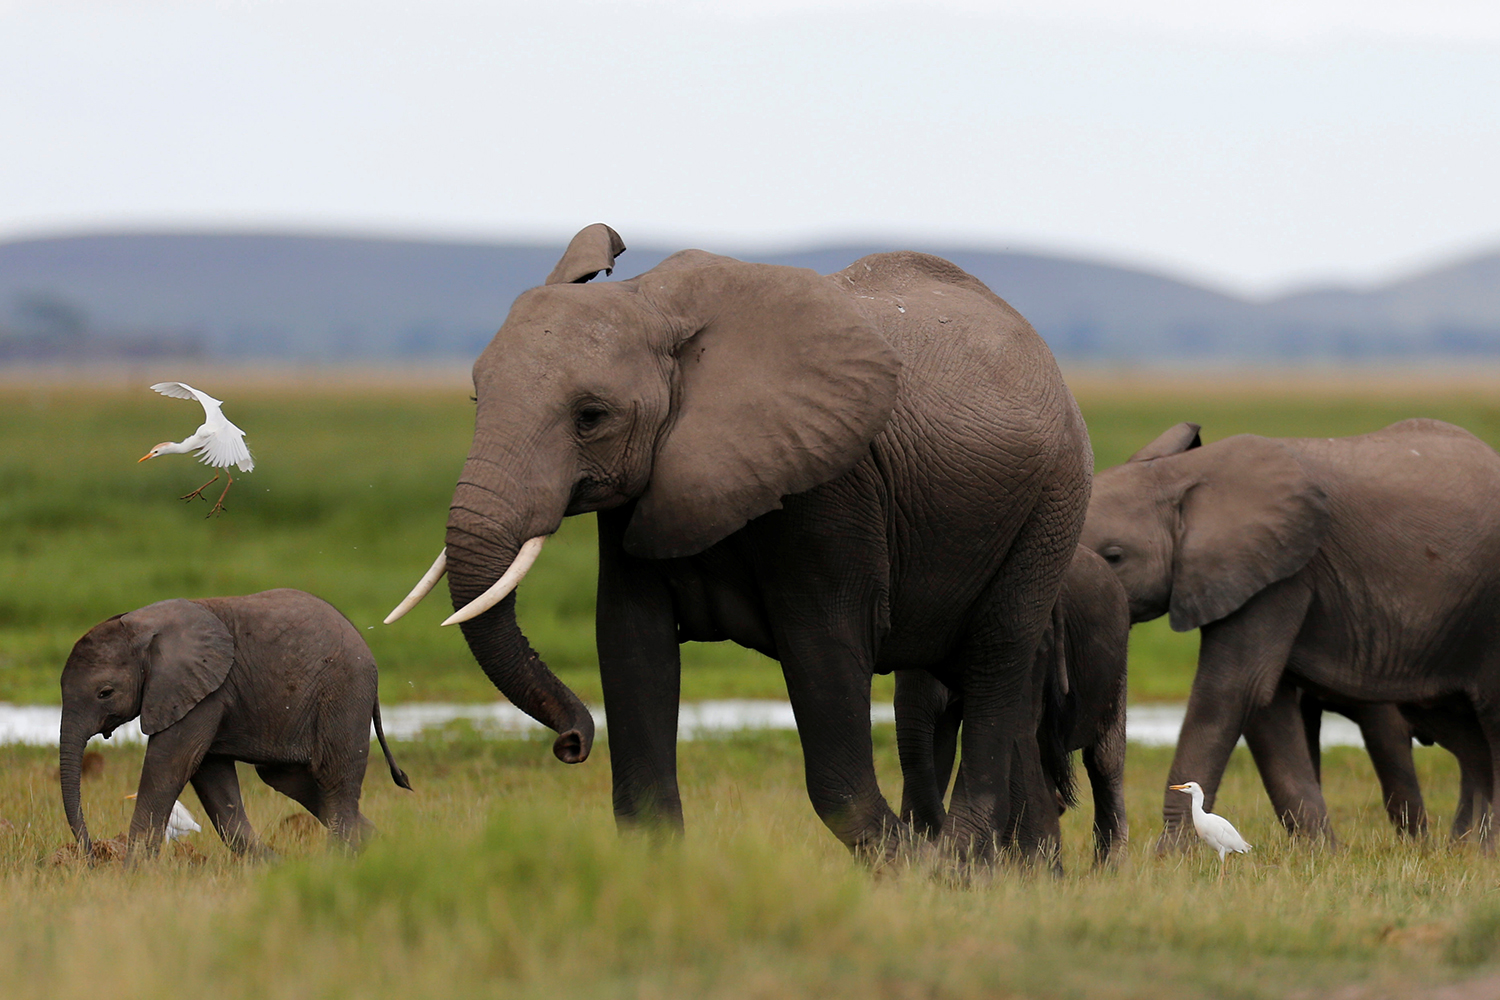 Ambicioso plan de Malawi: reubicar a 500 elefantes en un nueva reserva natural